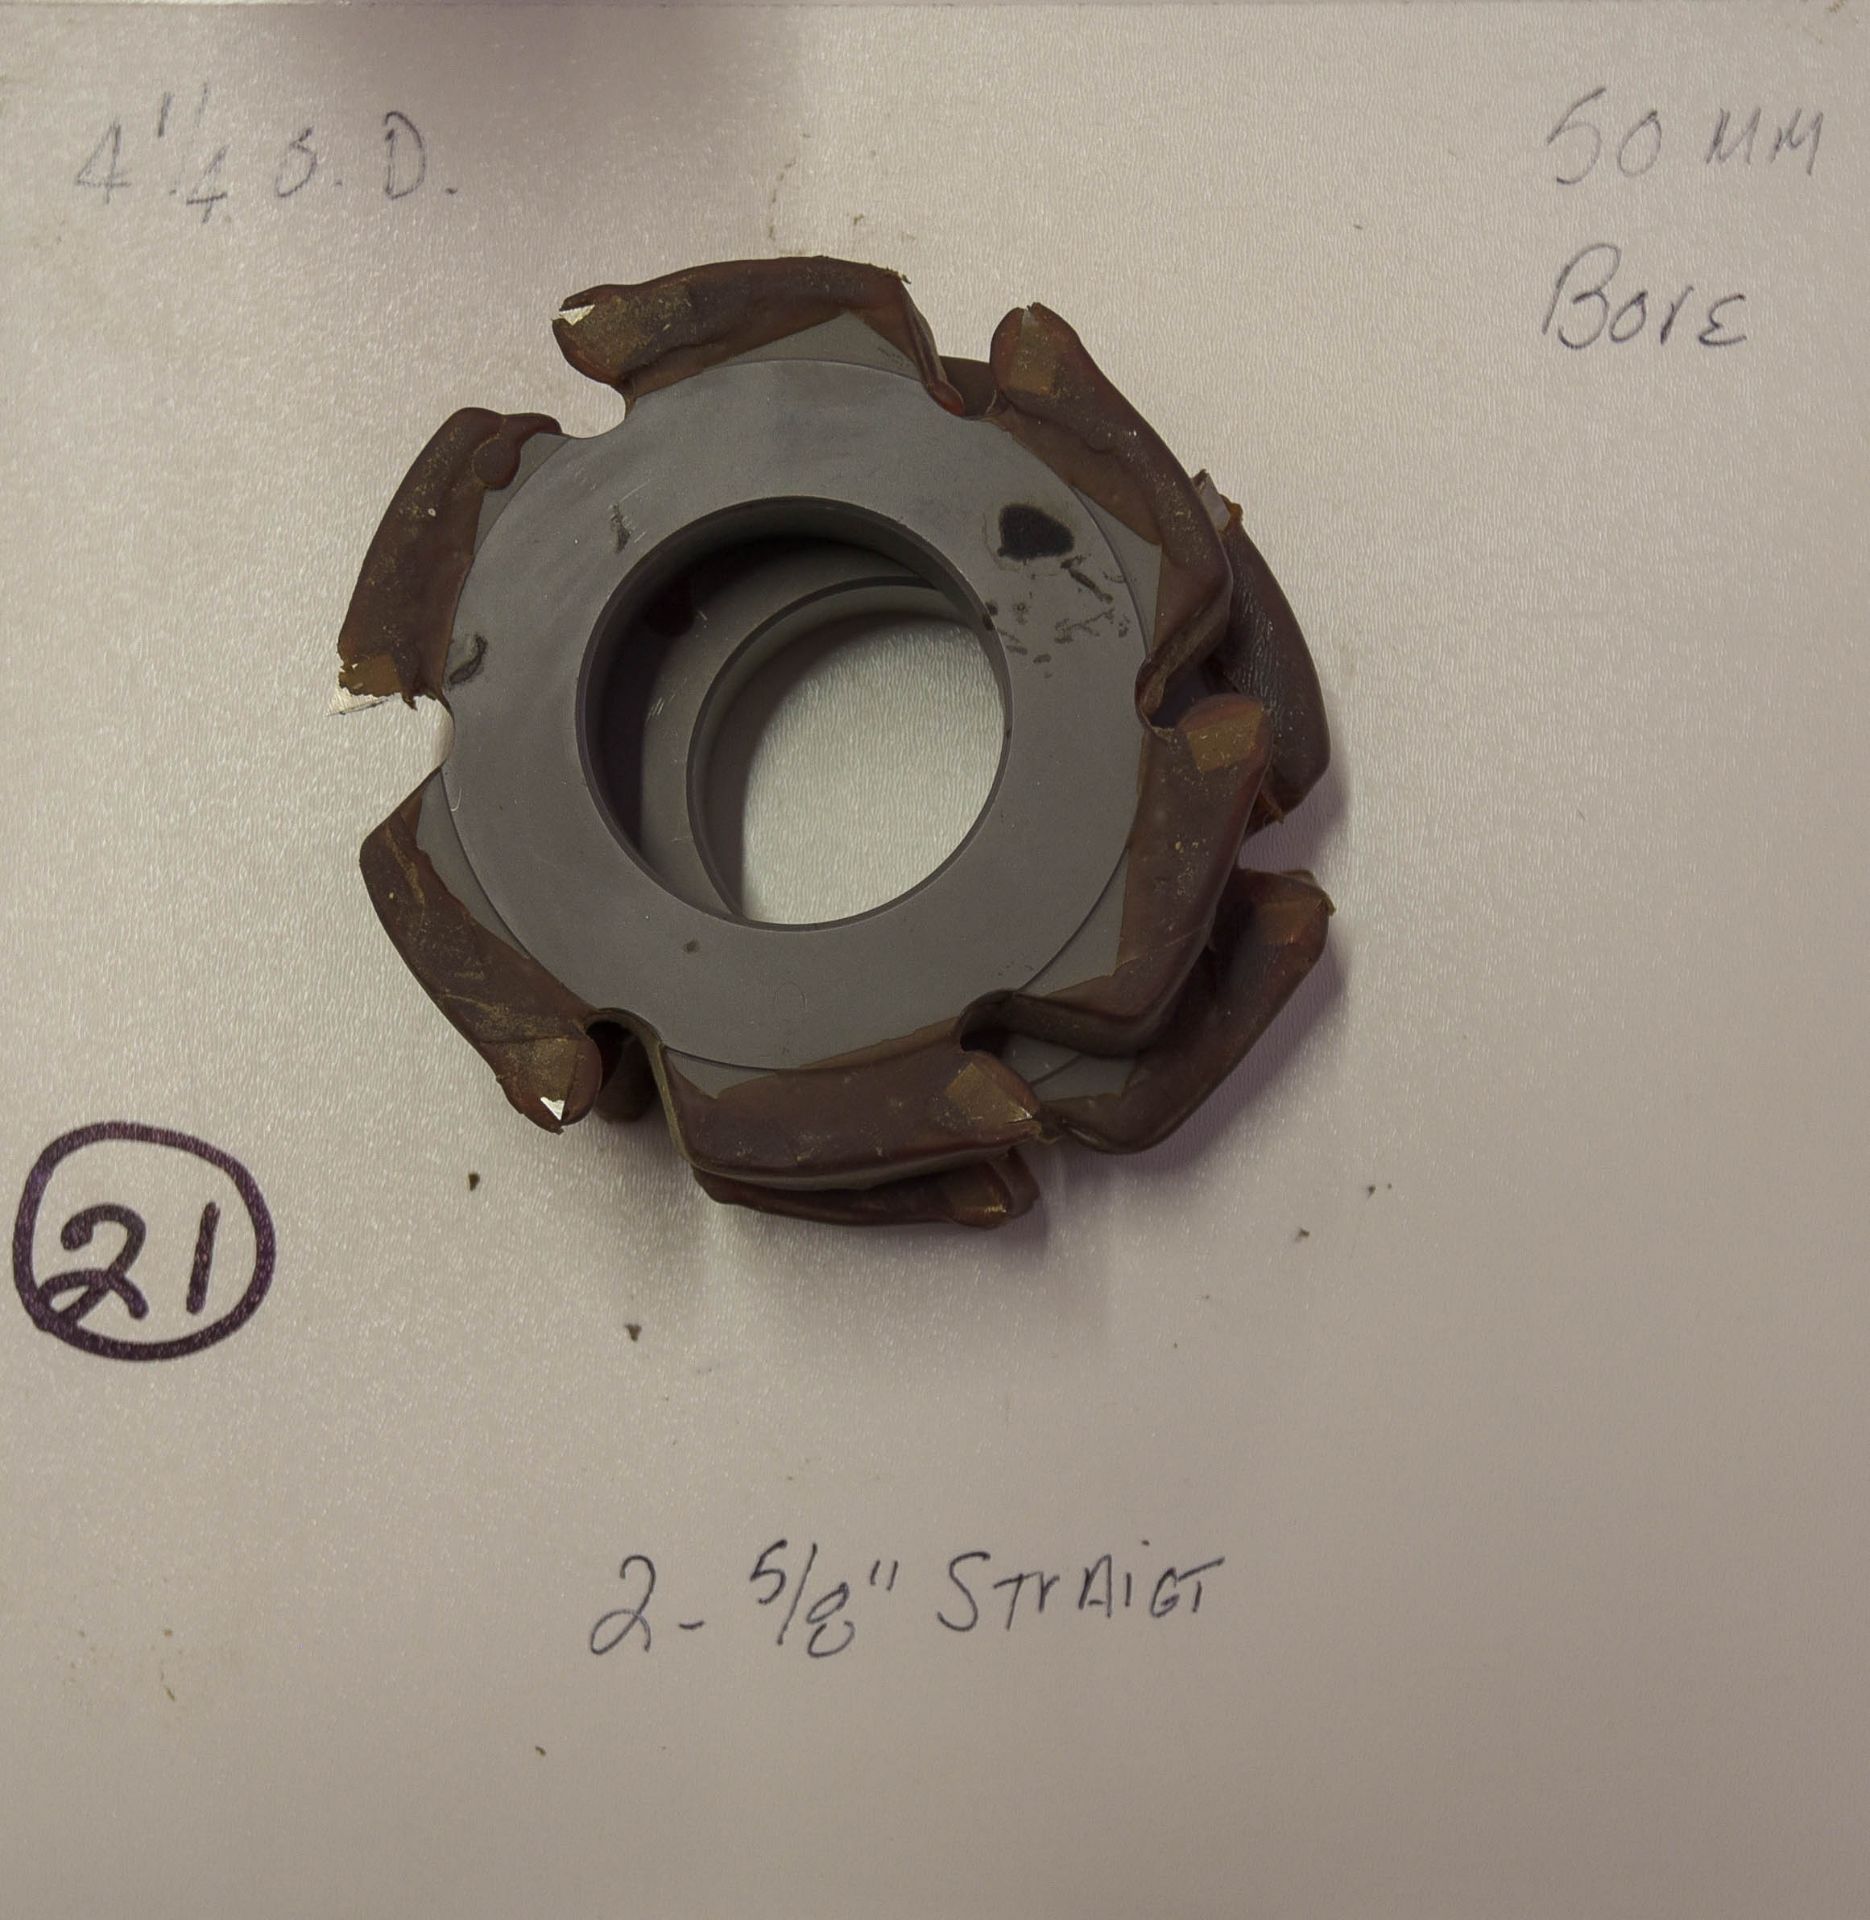 Shaper Cutters, (2) 5/8" Straight Cutters, 4-1/4" Outside Diameter, 50mm Bore /DSC3062